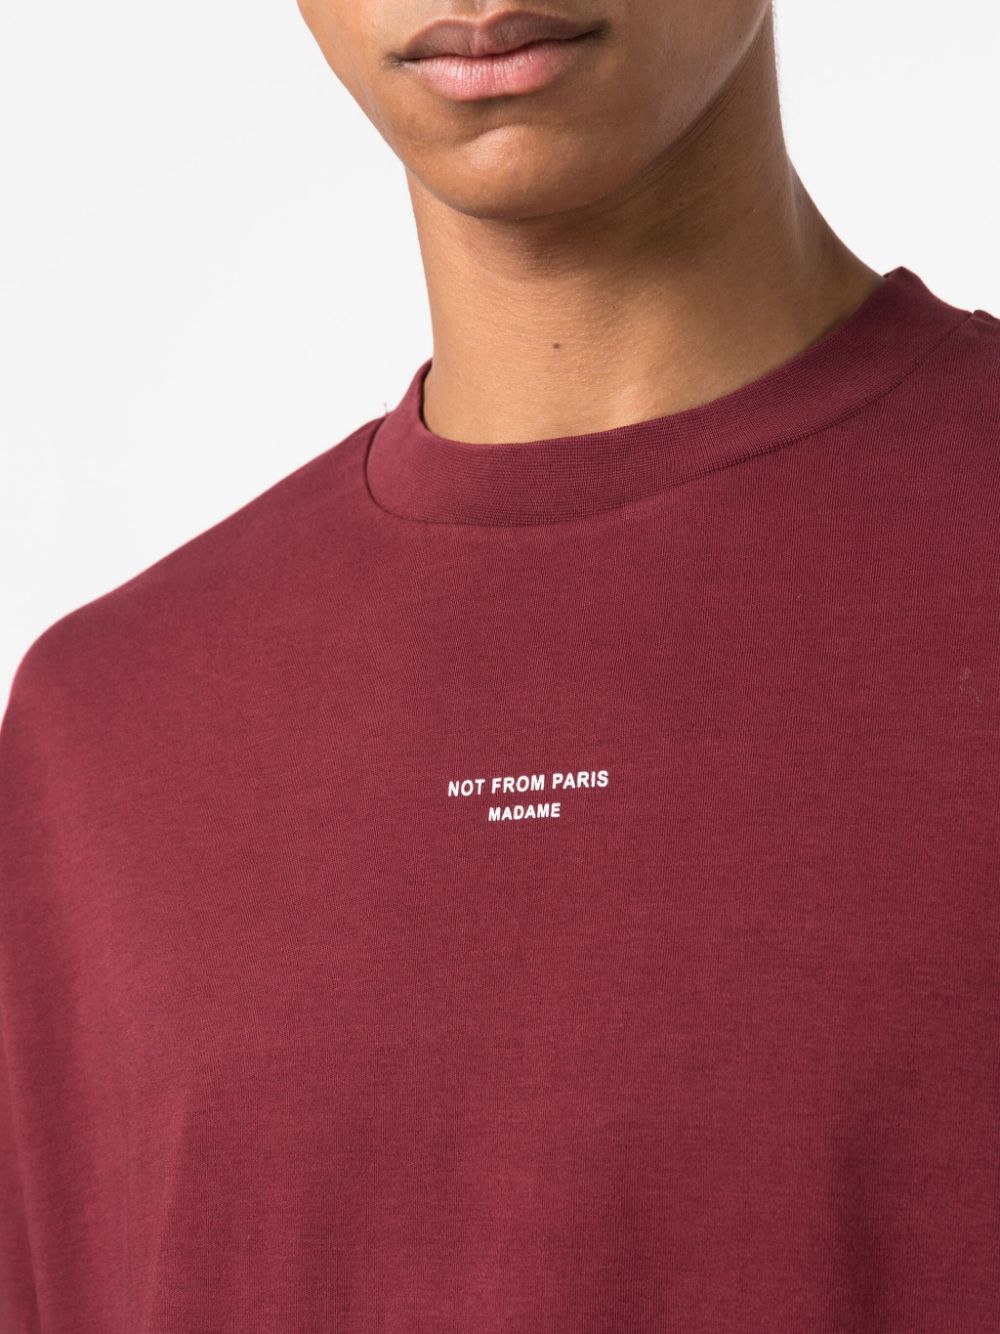 t-shirt bordeaux con logo sul petto